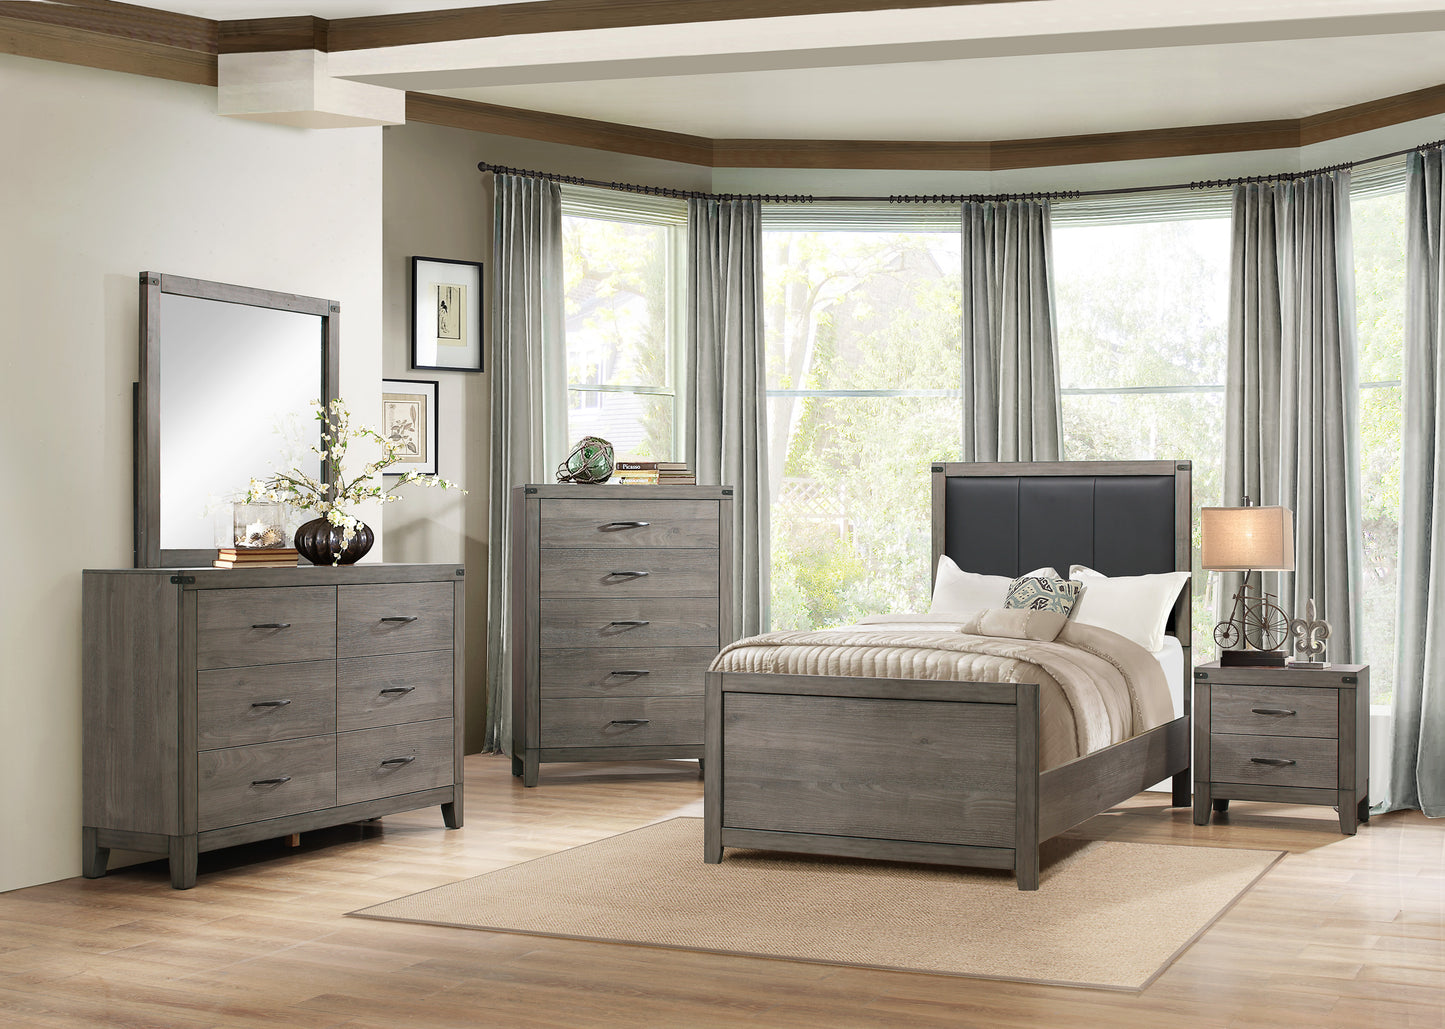 Walen Industrial 5PC Bedroom Set Twin Bed, Dresser, Mirror, Nightstand, Chest in Grey